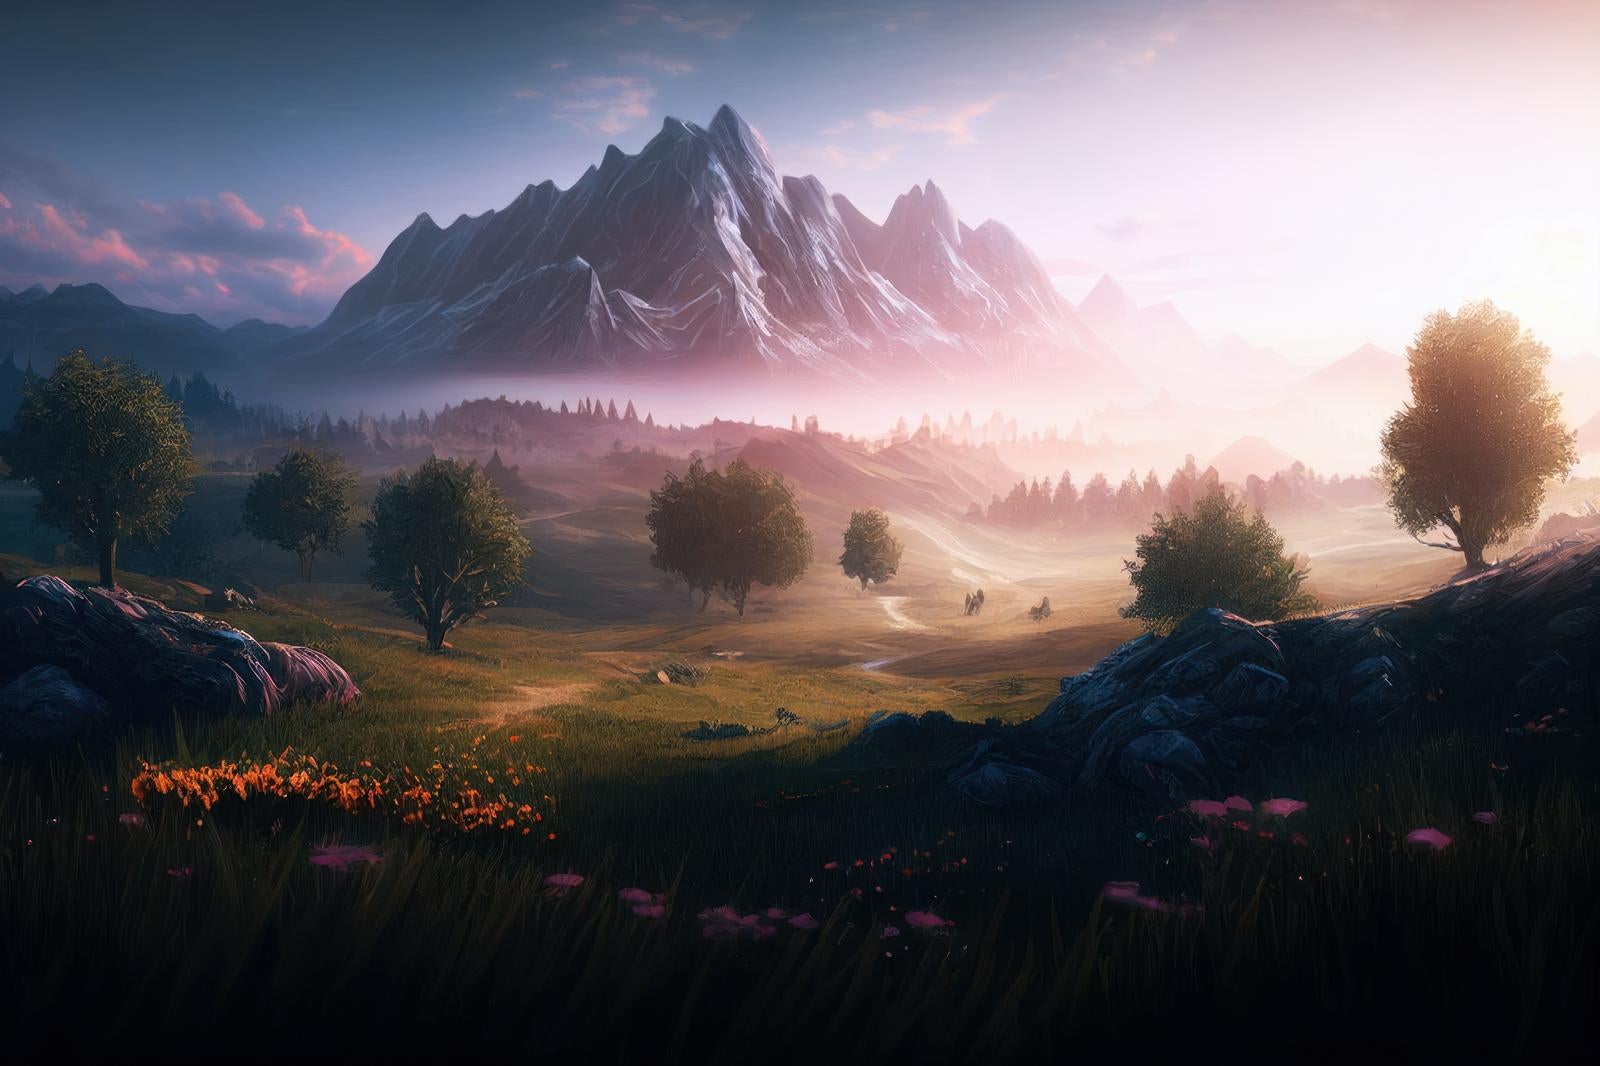 「朝靄と登山道 夜明けの麓から平地へ」の写真